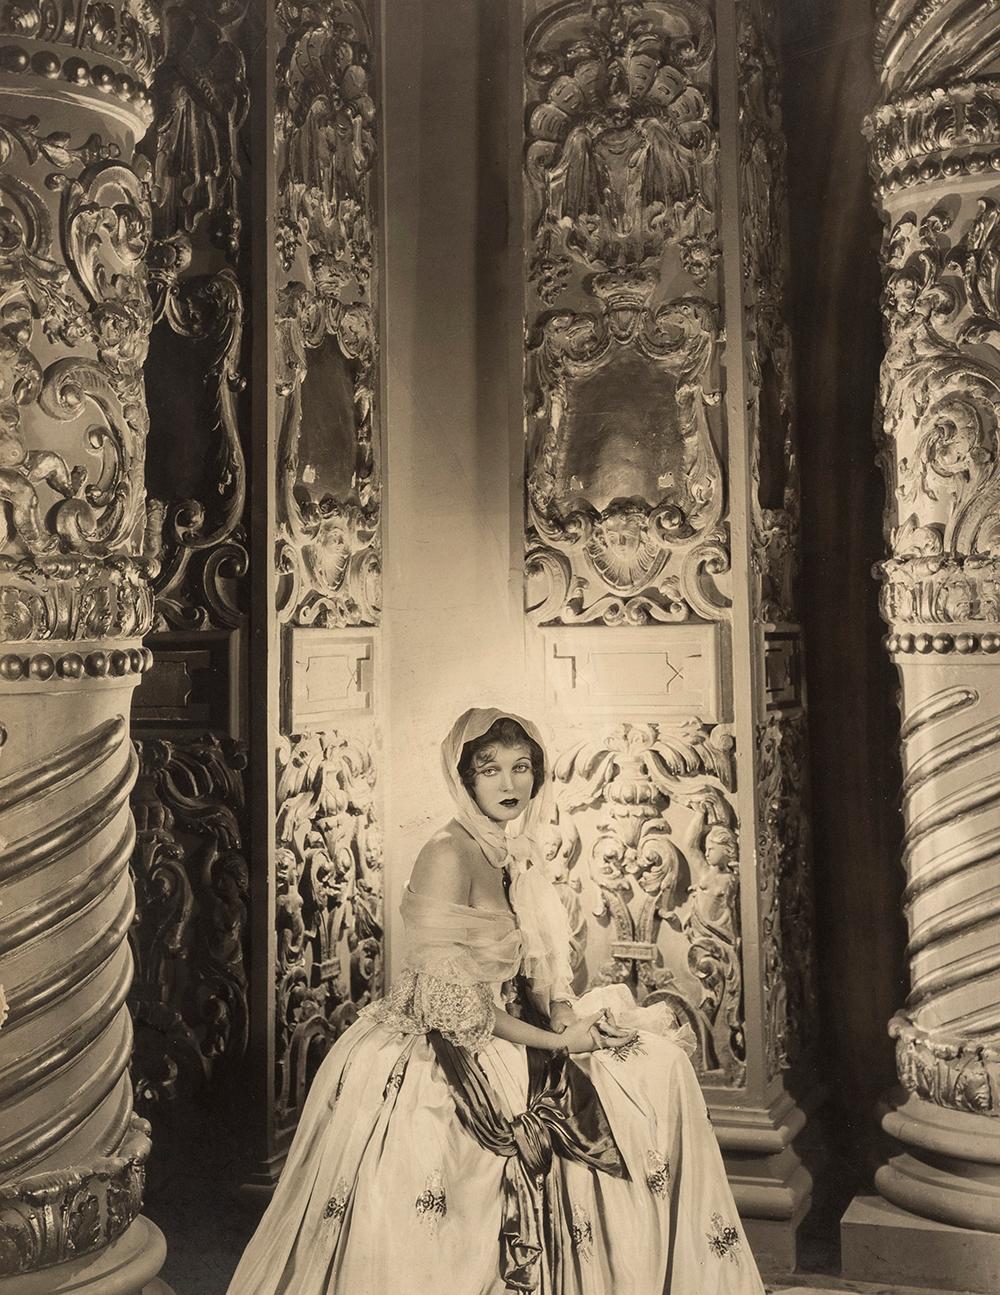 Corinne Griffith, 1930  - Cecil Beaton (Modeporträtfotografie)
Rote Inkwash-Signatur auf der Montierung
Bezeichnet "Corinne Griffith" von unbekannter Hand und gestempelt mit Sotheby's Cecil Beaton Studio-Tintenstempeln auf der Rückseite des